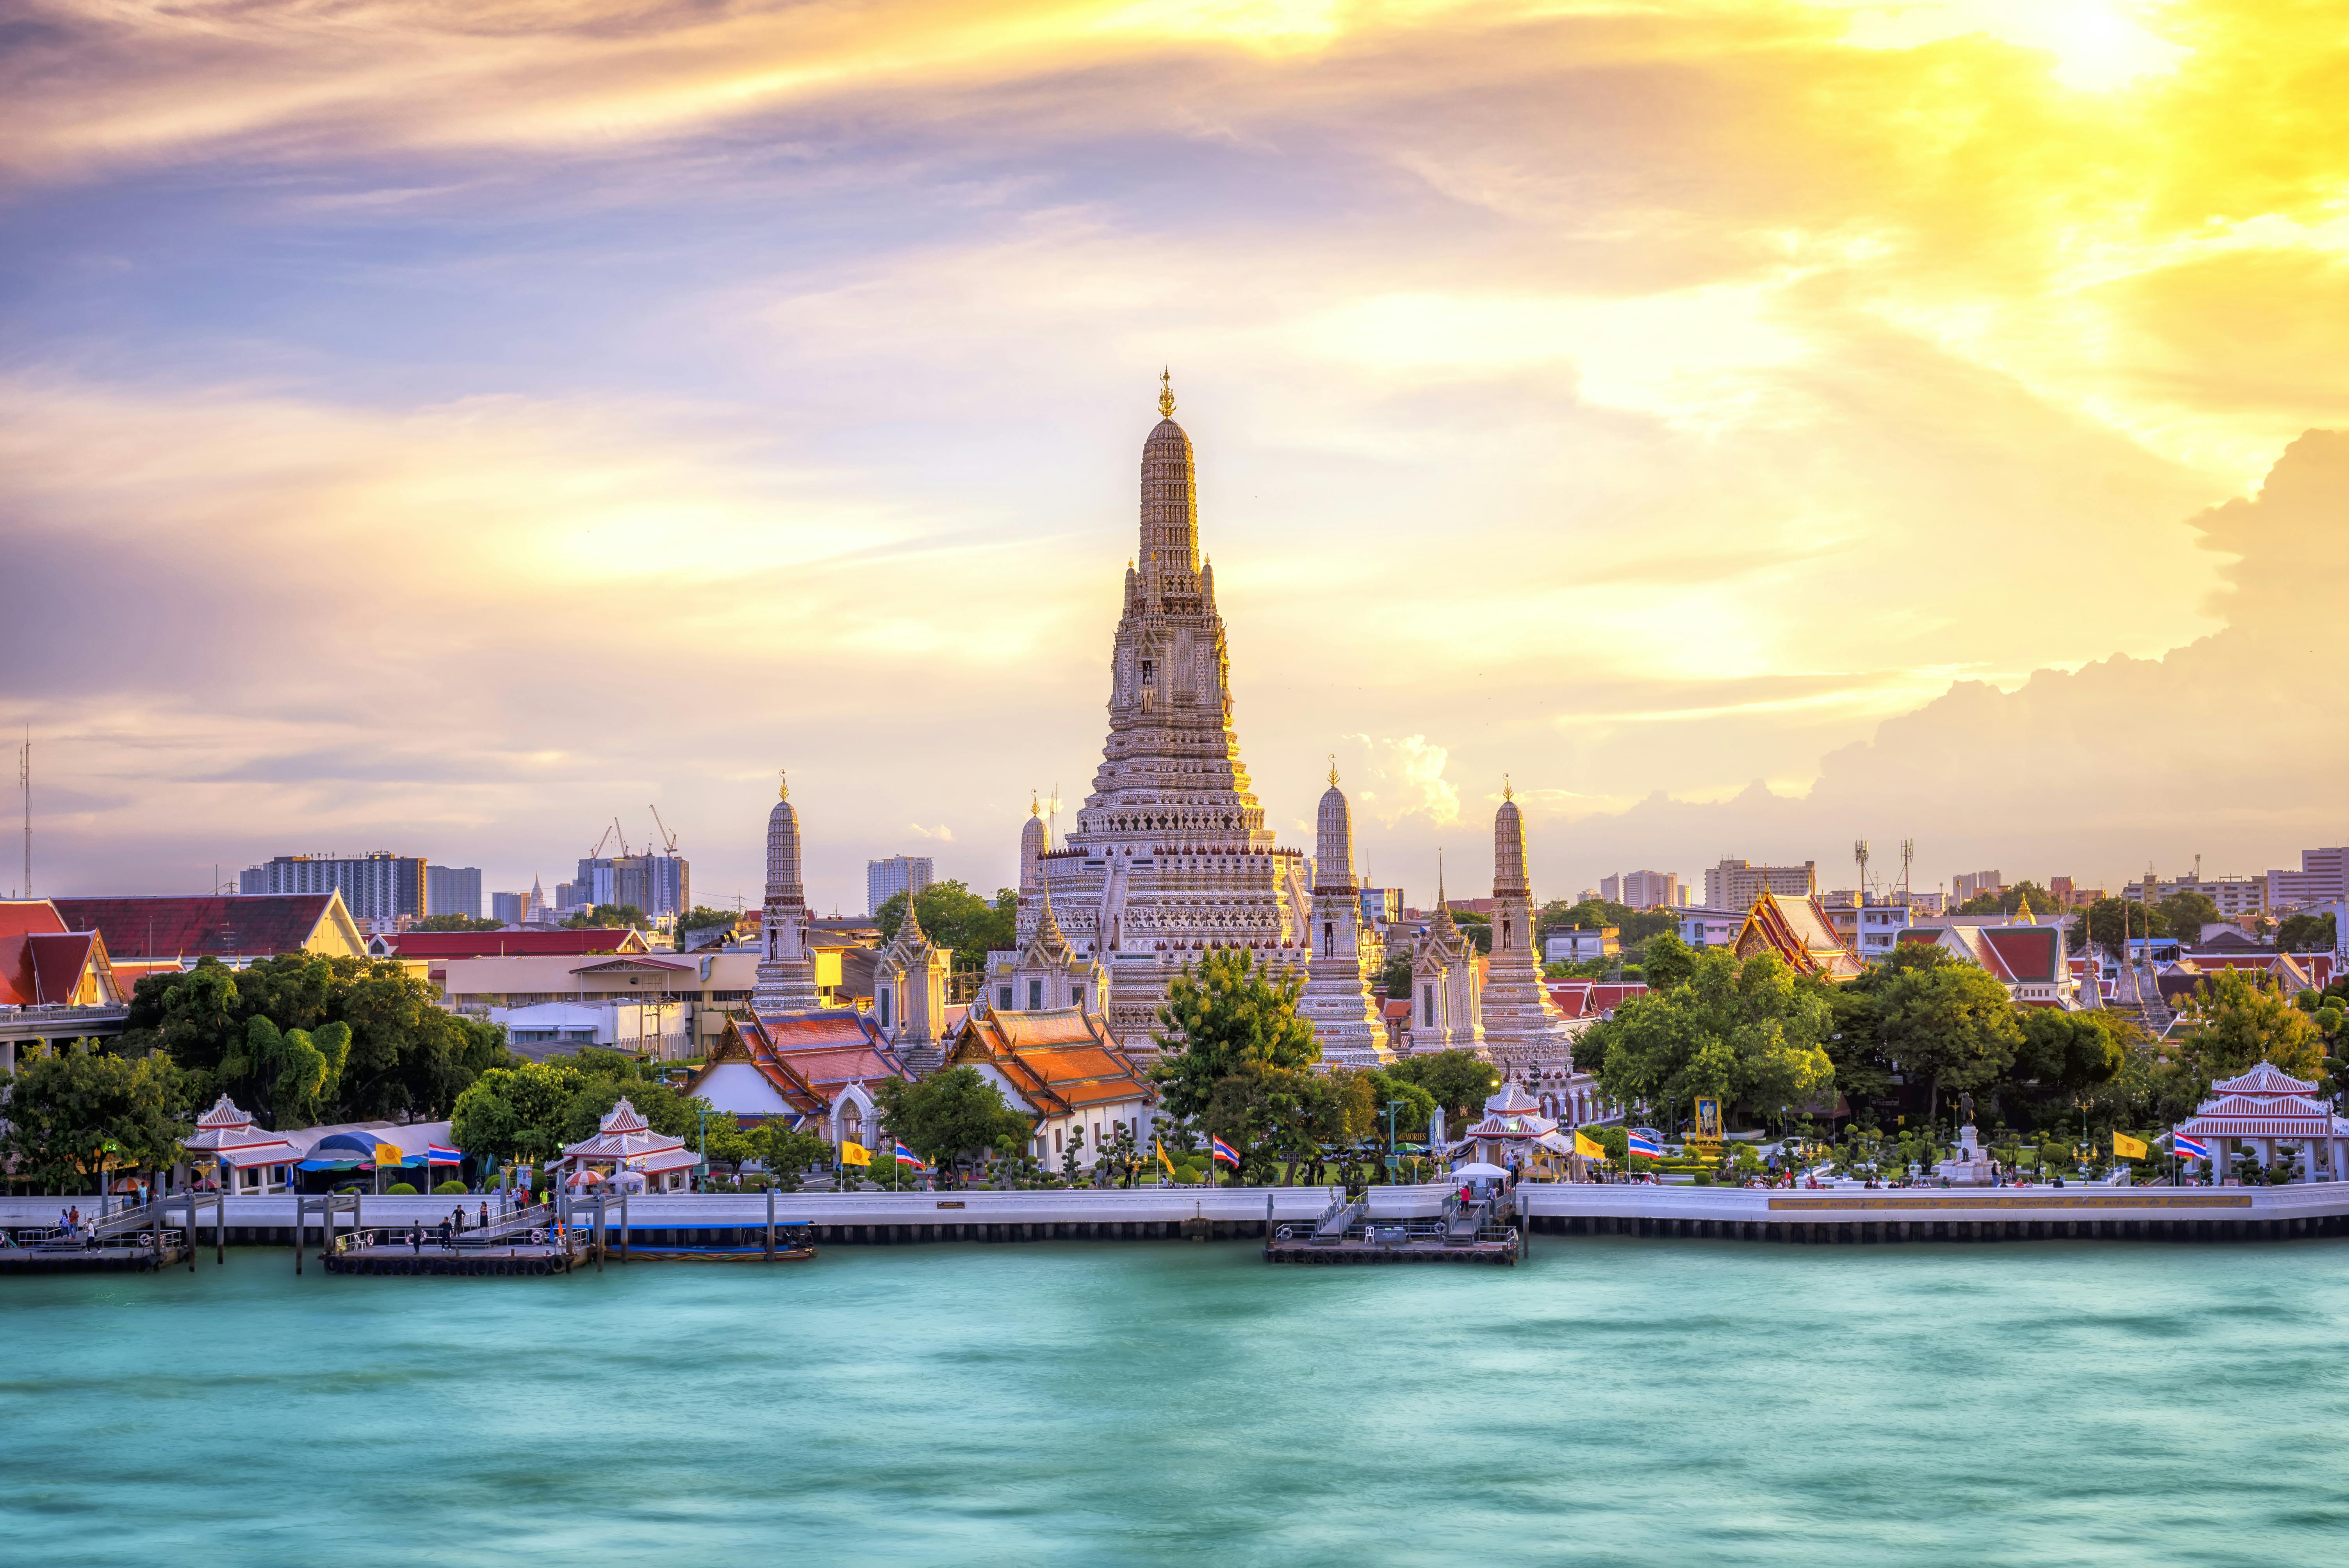 Incredibile tour della città di Bangkok di 4 ore